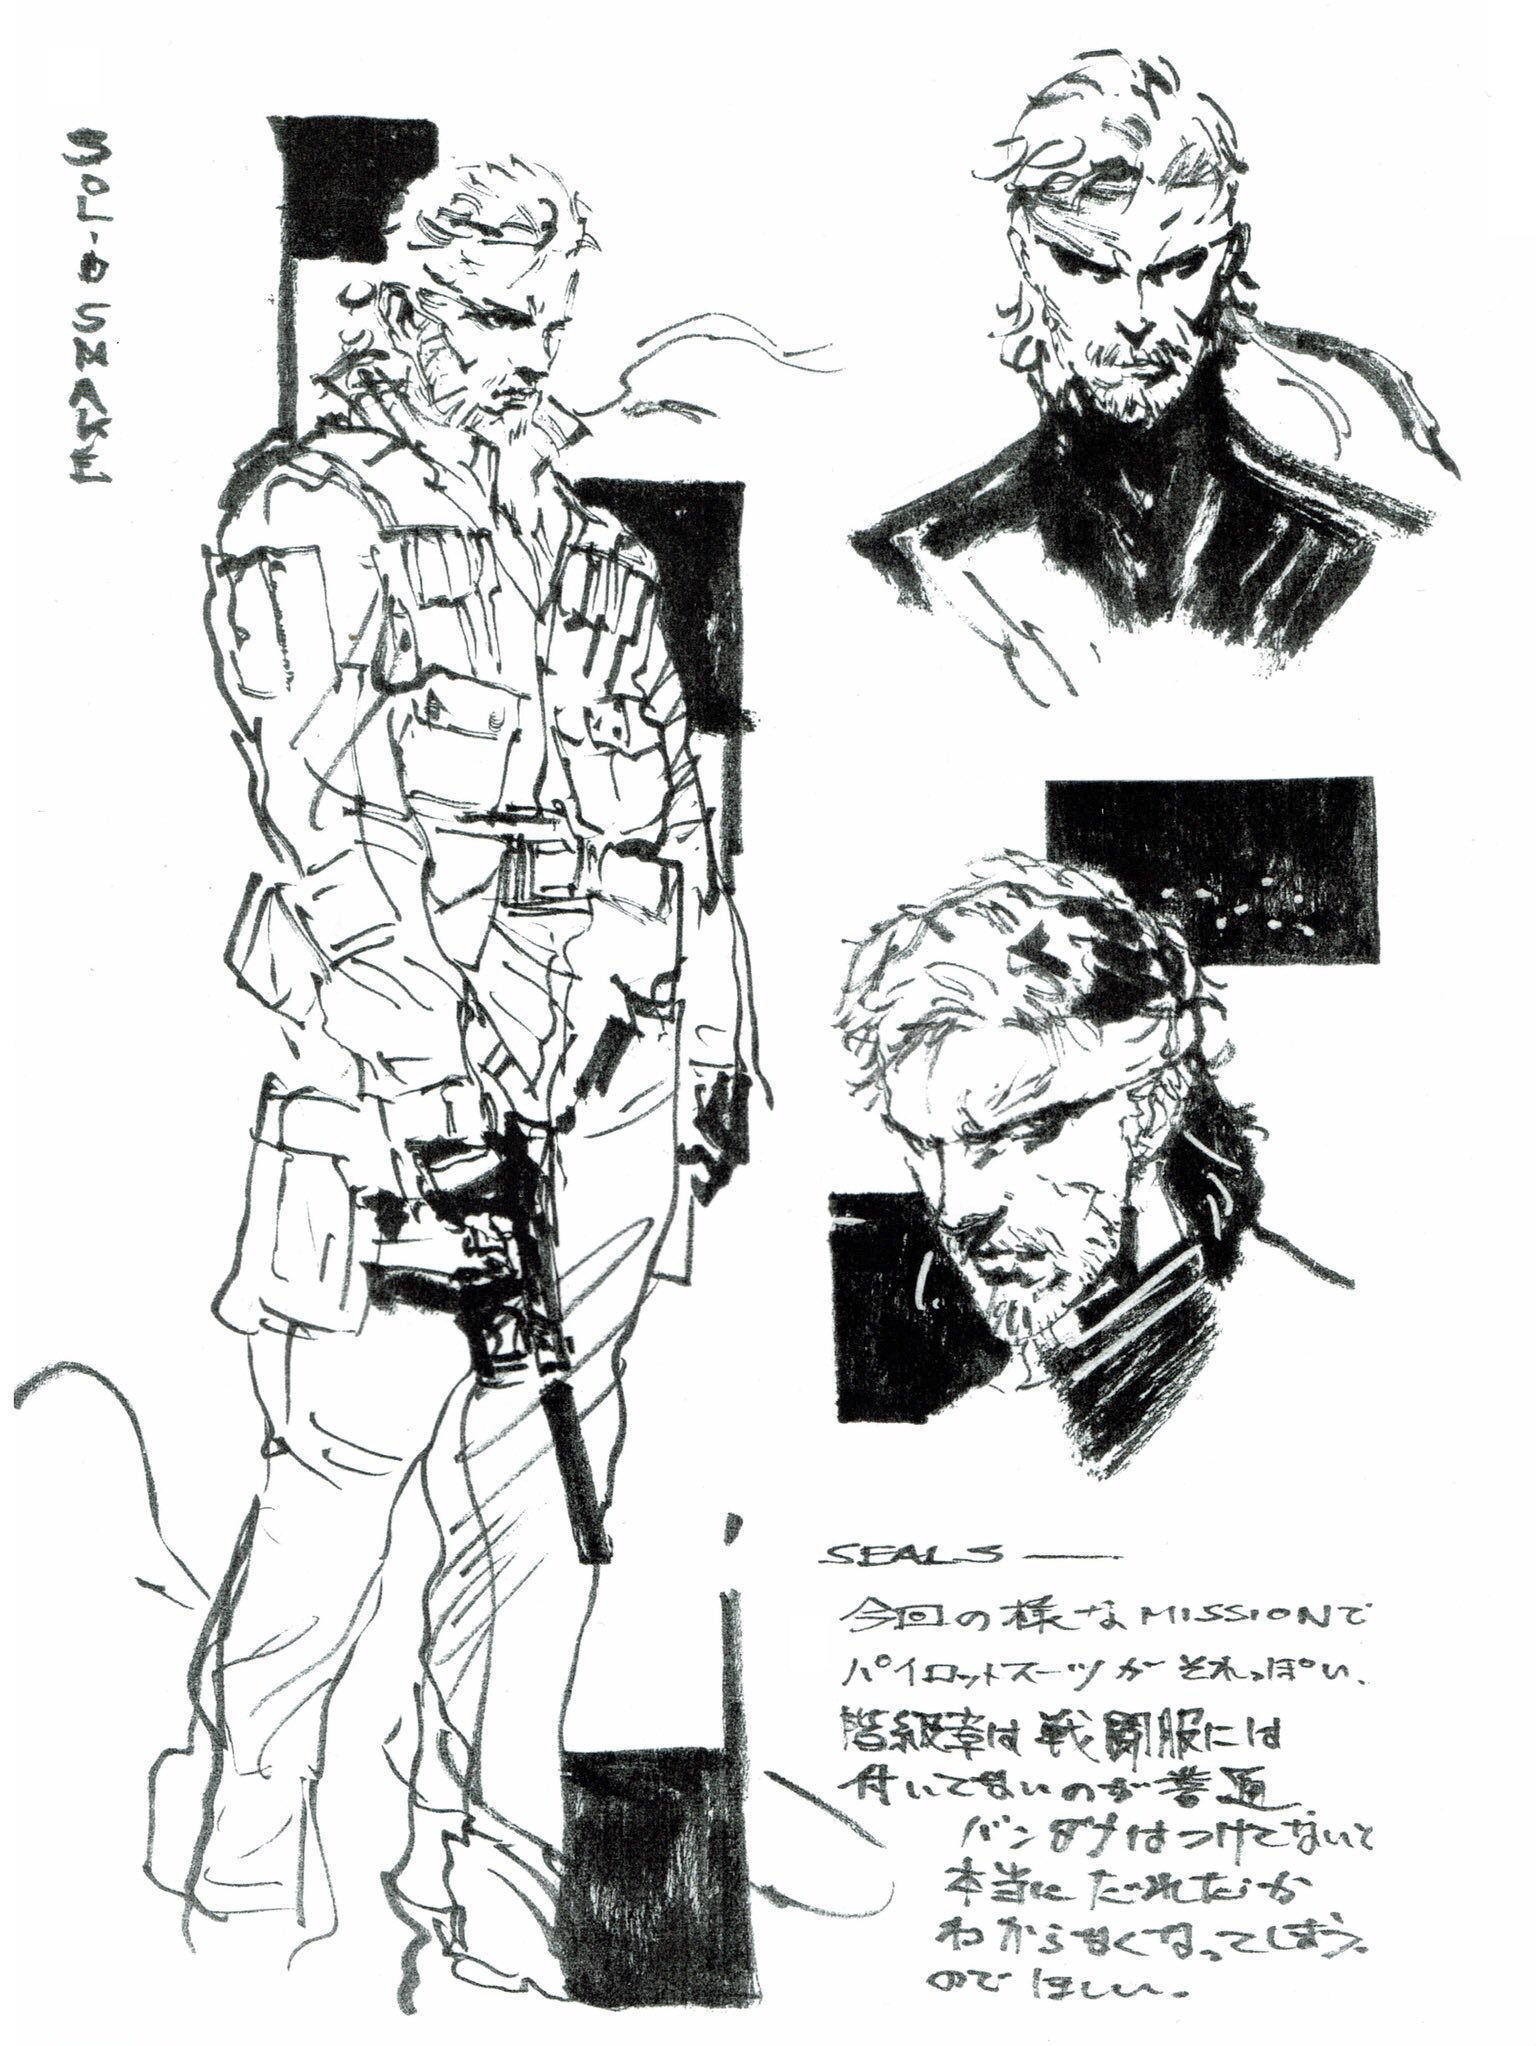 Solid Snake sketch